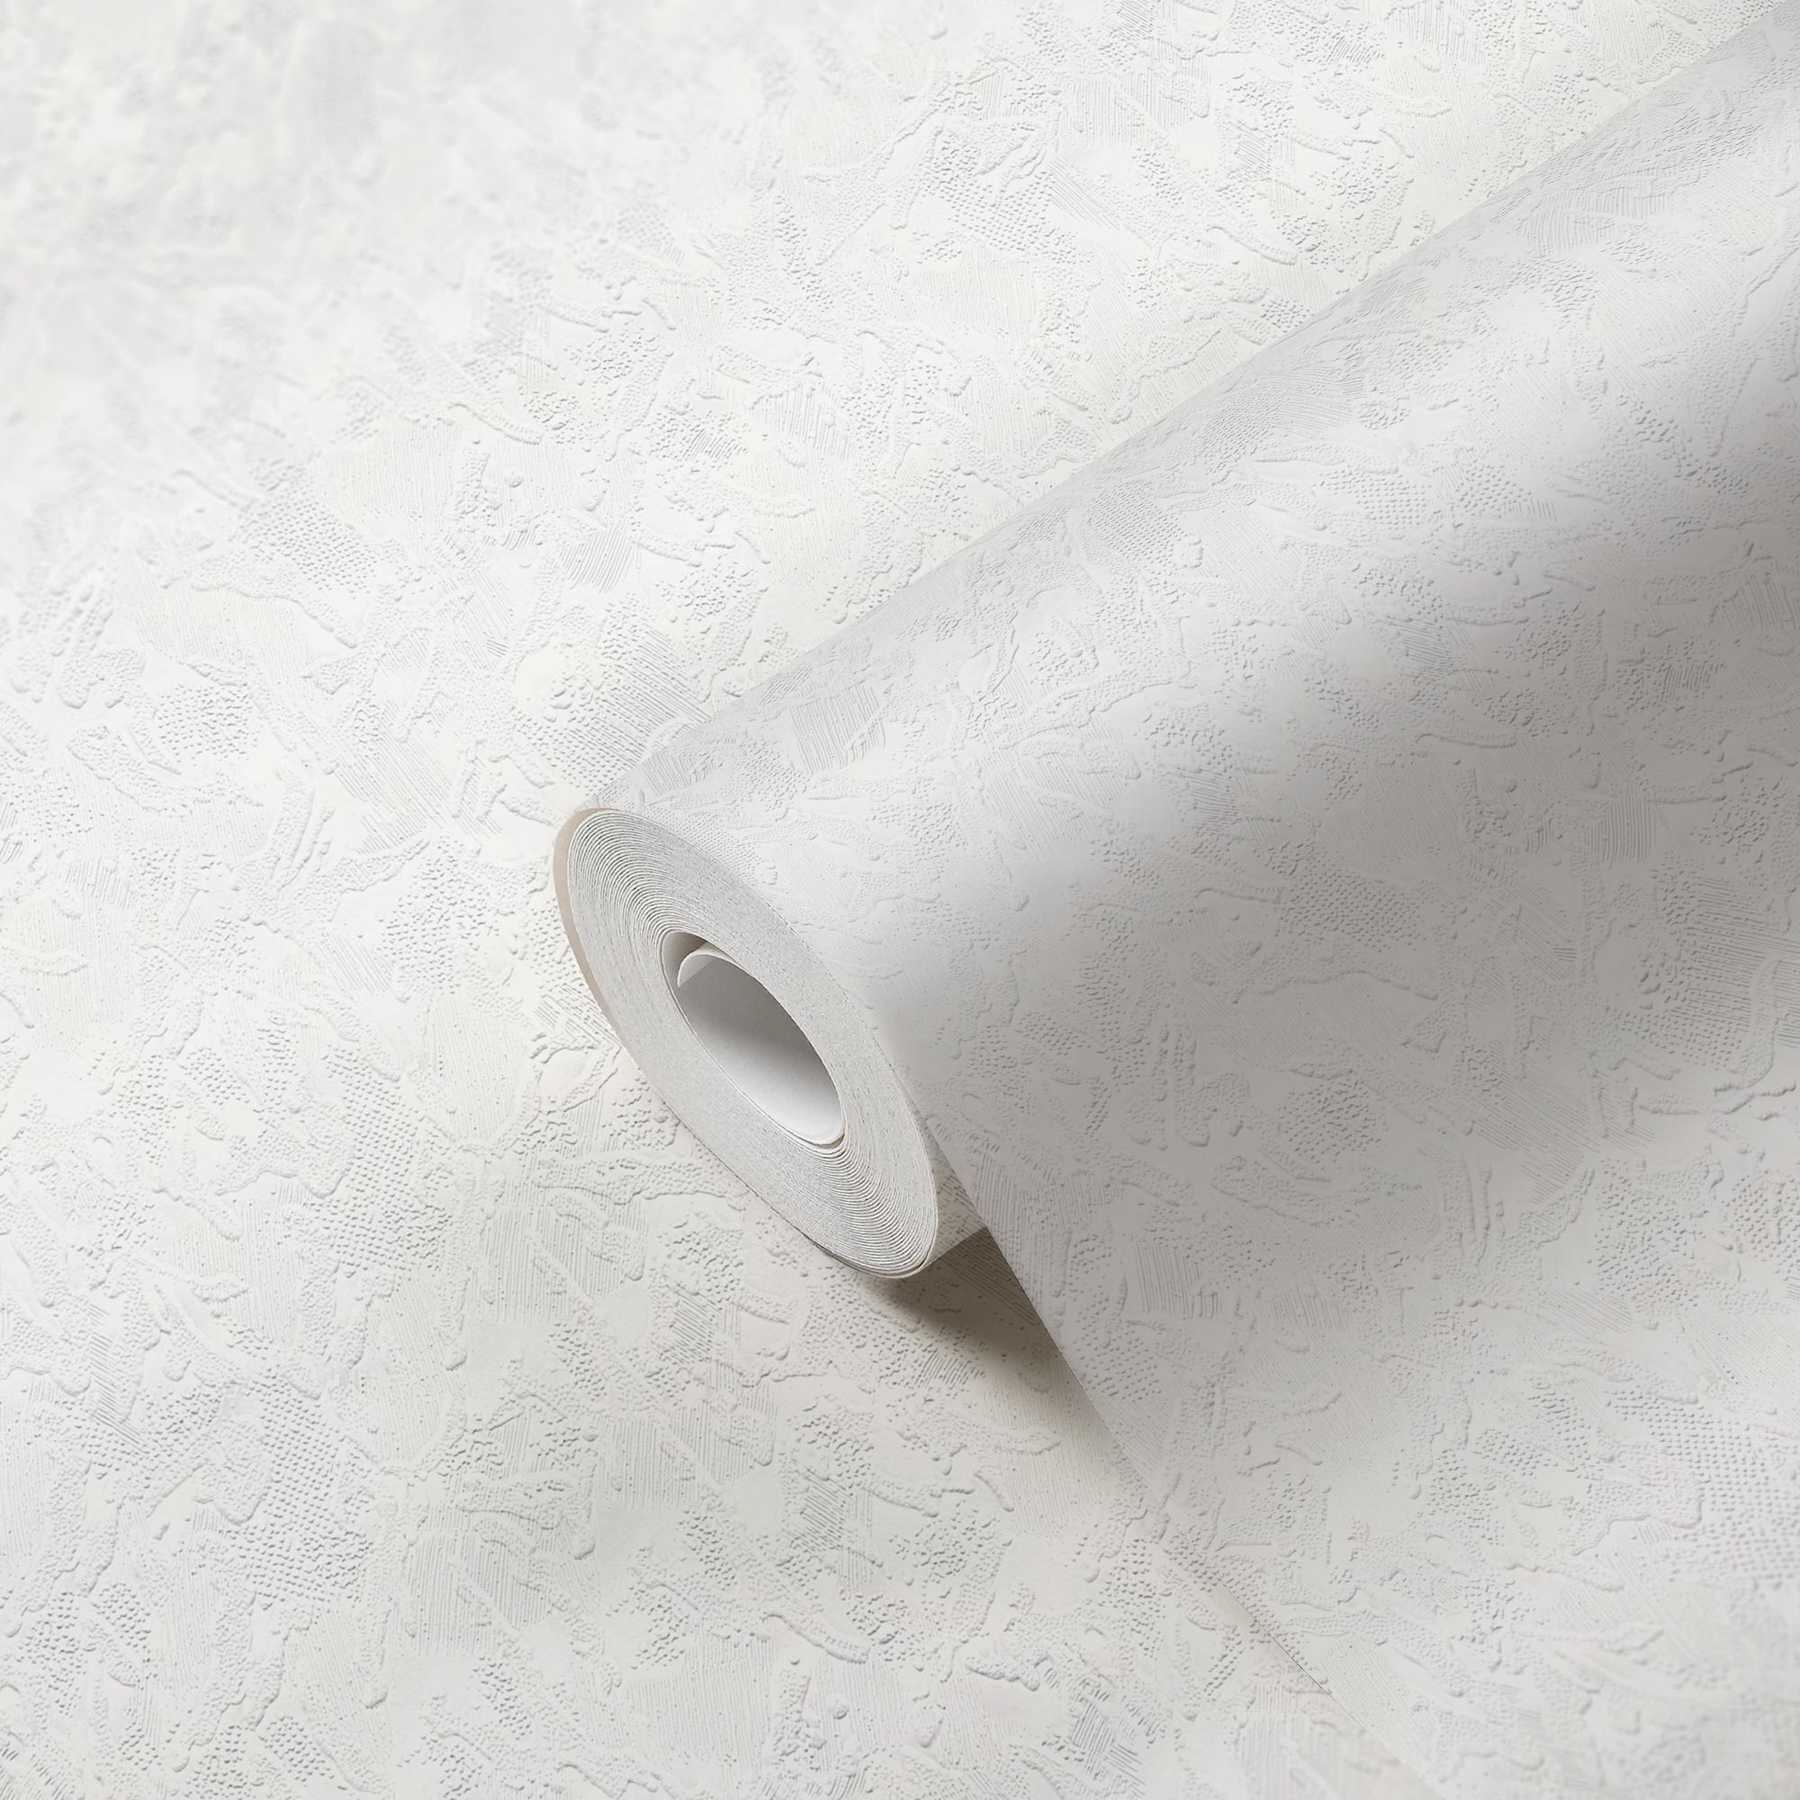             papier peint en papier imitation plâtre avec surface texturée trompeuse - blanc
        